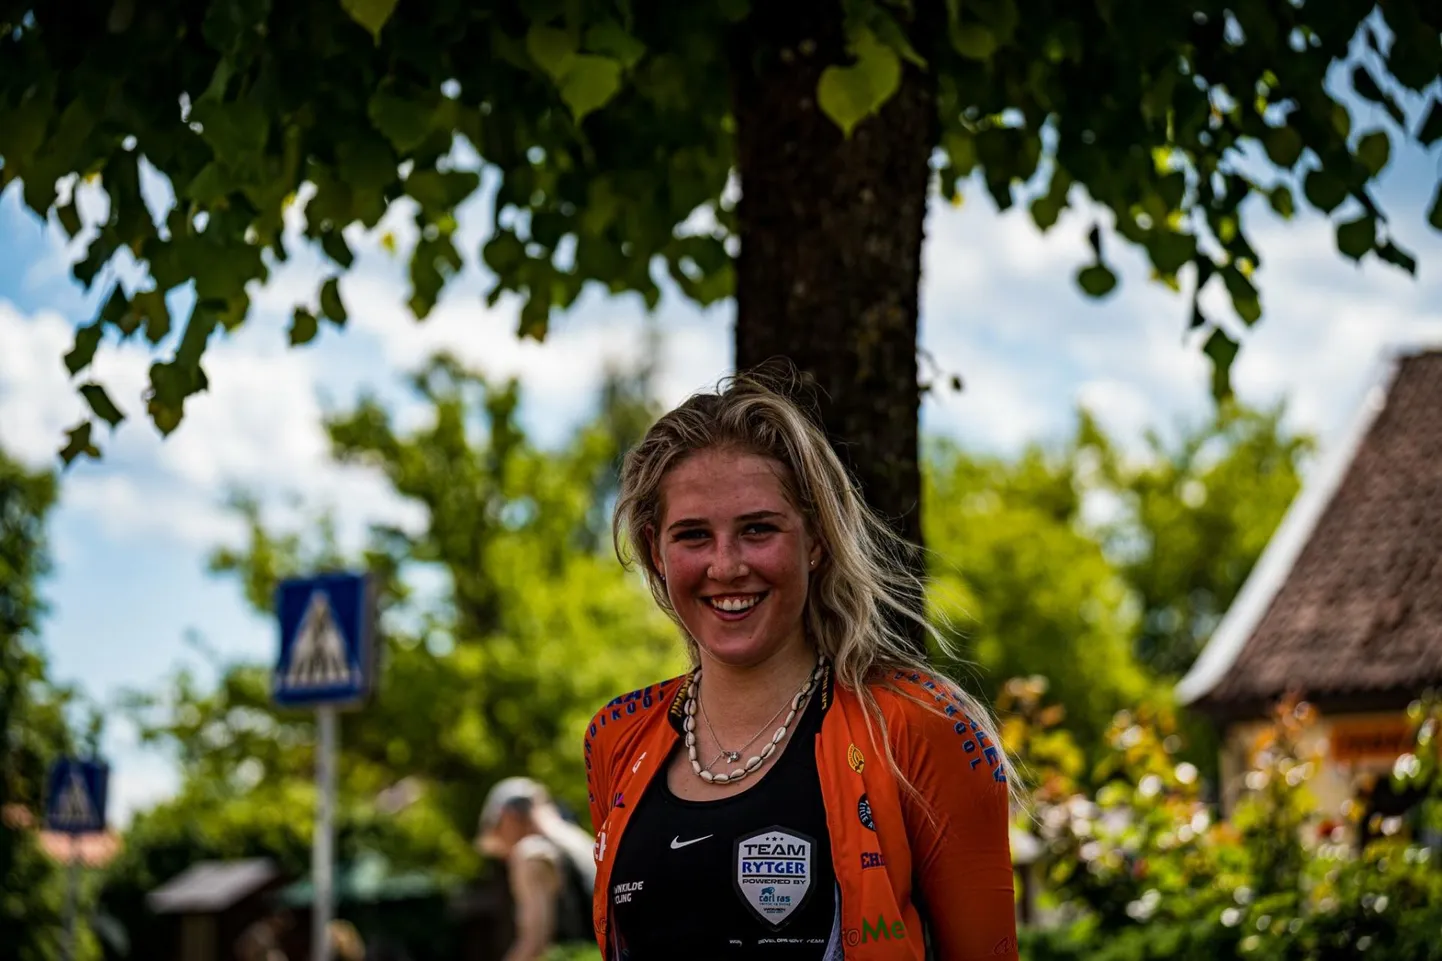 19aastane Laura Lizette Sander võitis viie päevaga kaks eliitklassi Eesti kulda.